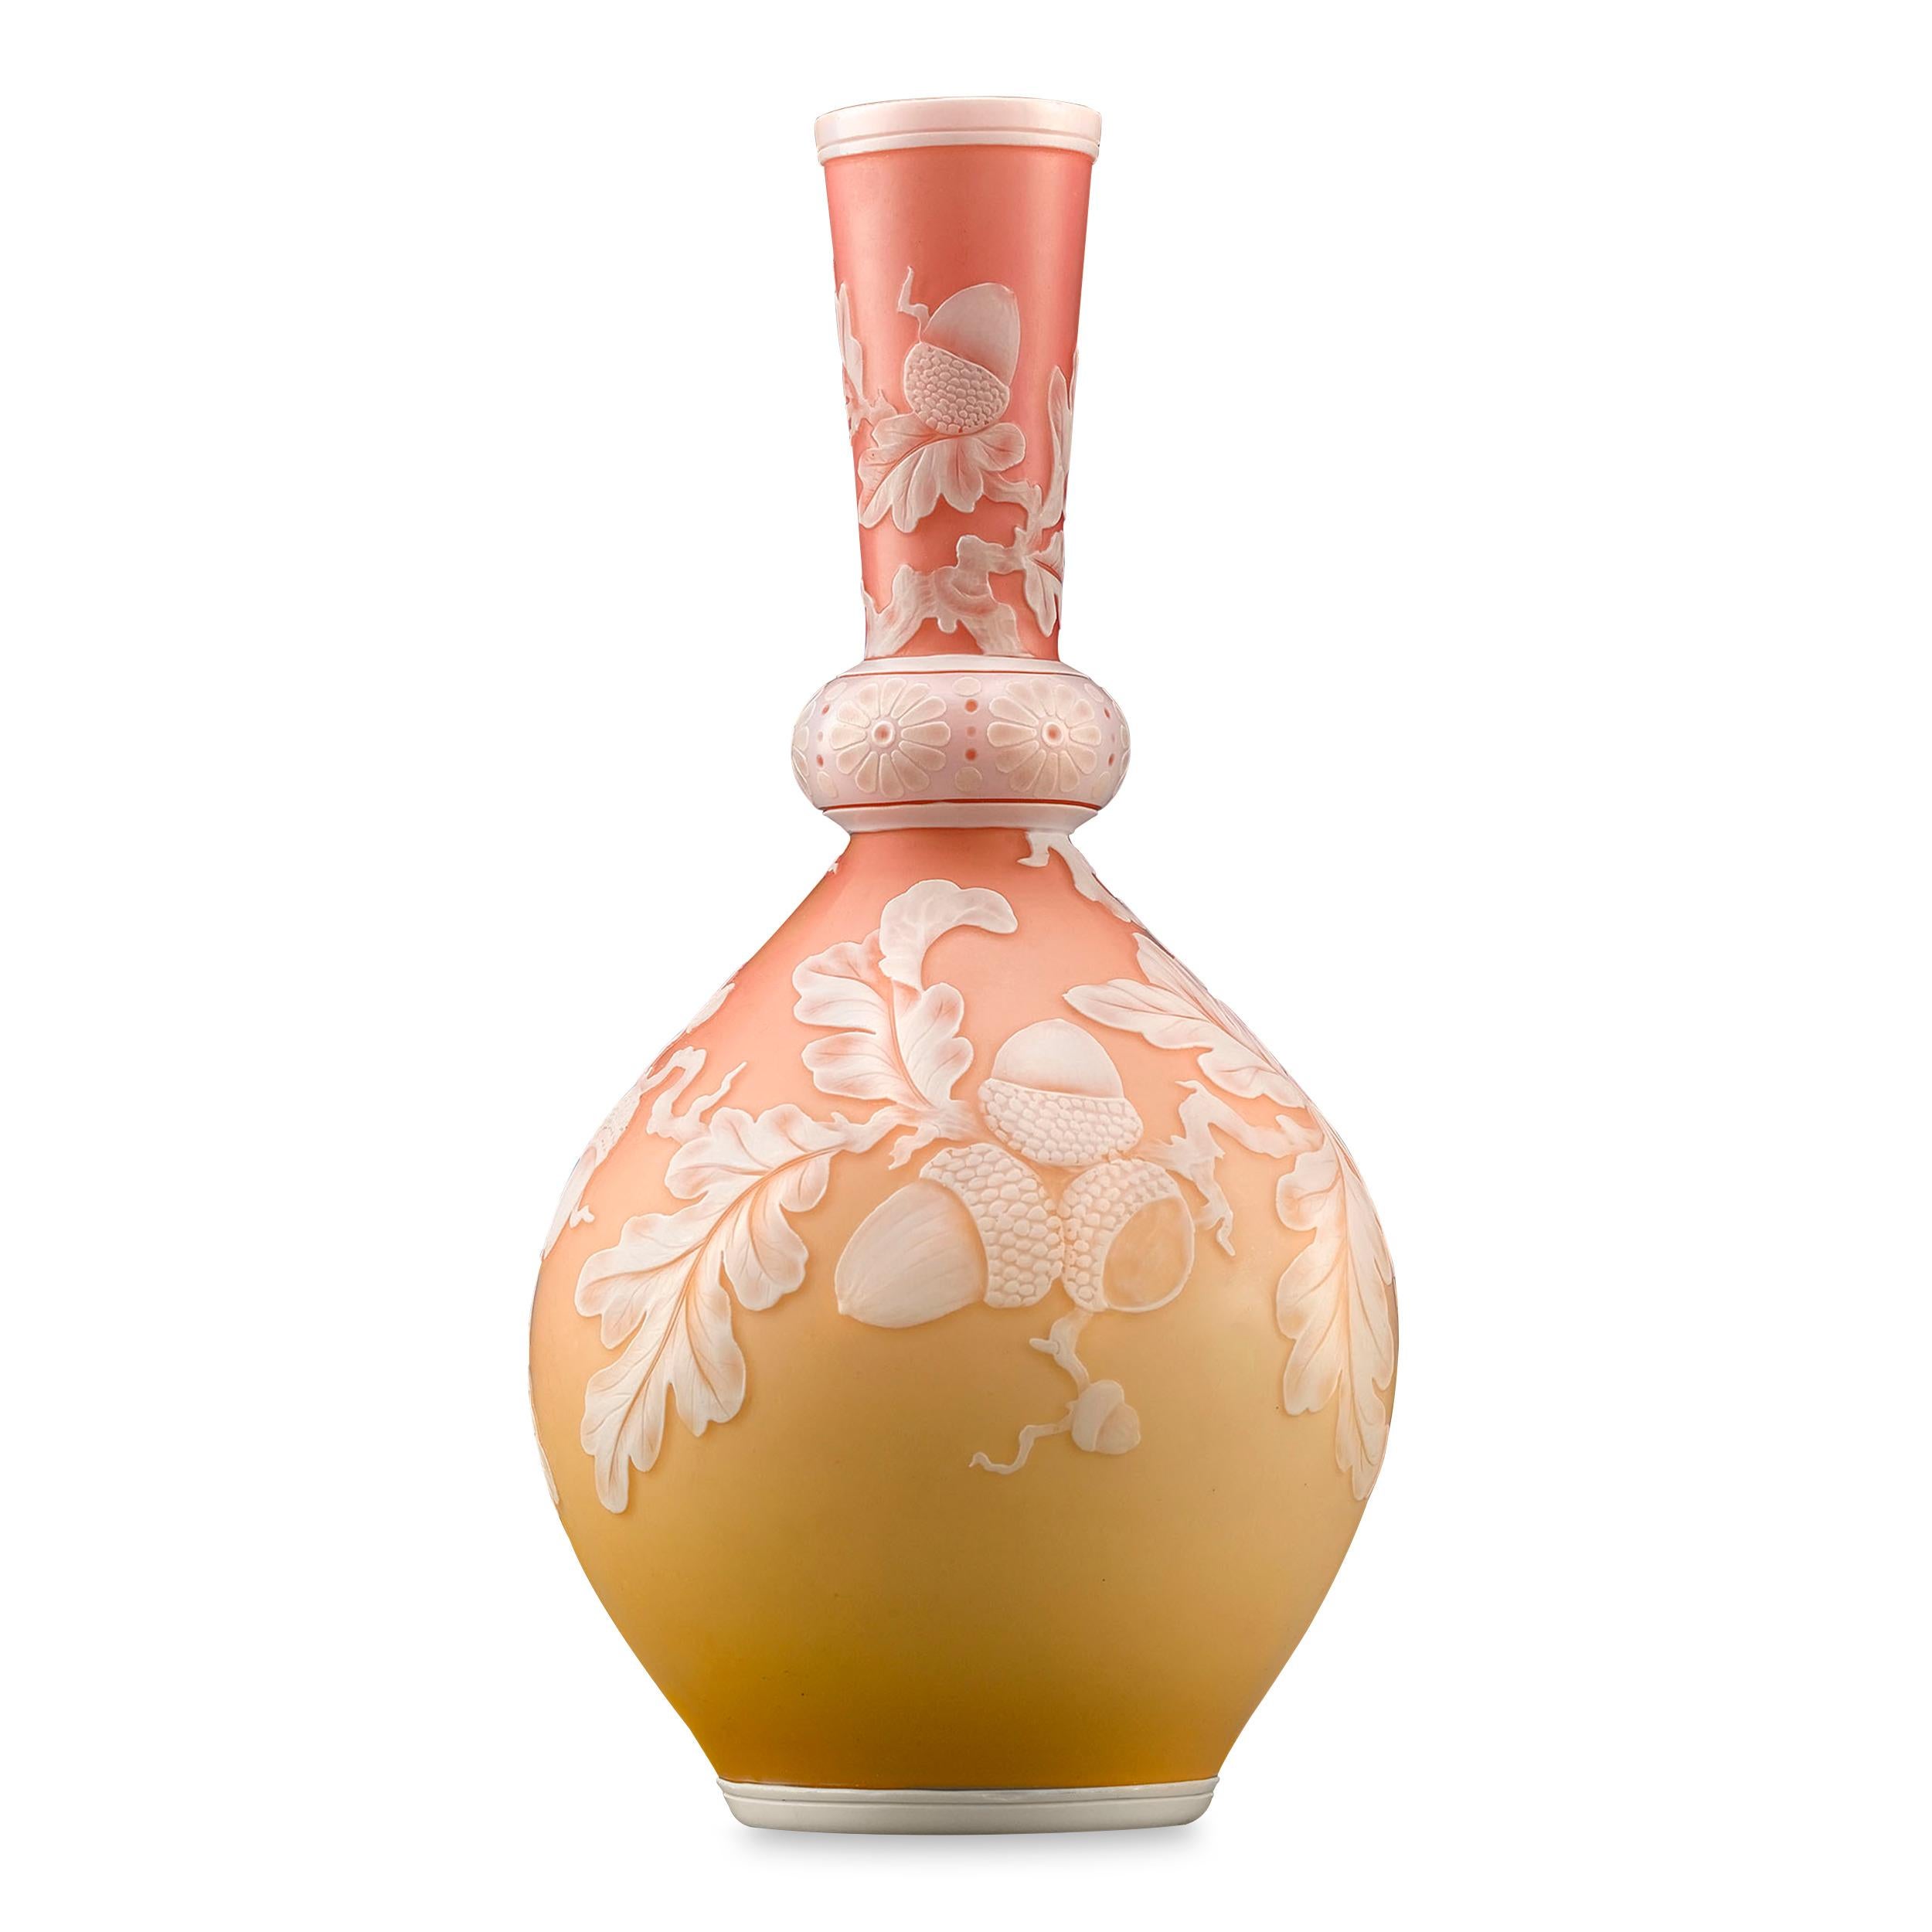 Un joli vase anglais en verre camée de couleur pêche, décoré d'un motif de vigne feuillue. Excellent état.

Circa 1880

Dimensions : 5